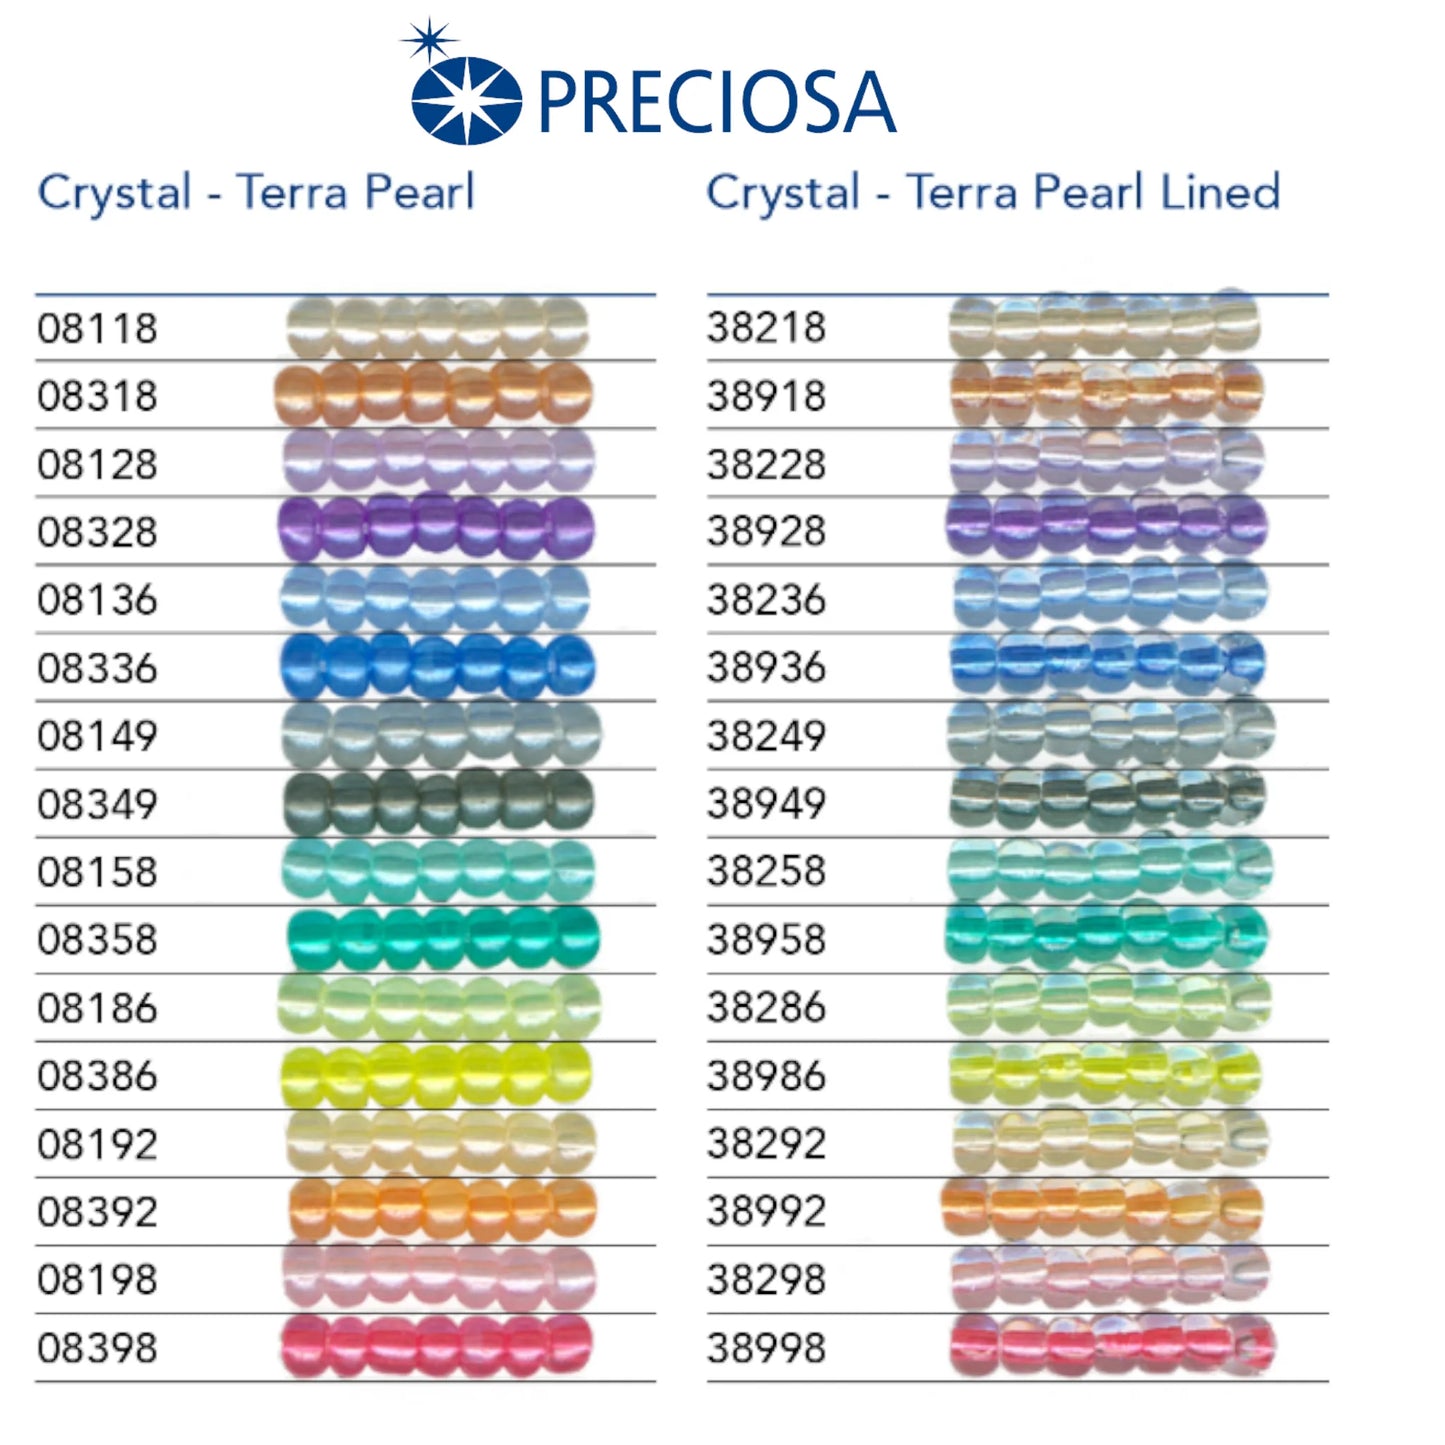 08192 Rocailles tchèques PRECIOSA Rocailles 10/0 pêche. Cristal - Terra Perle.